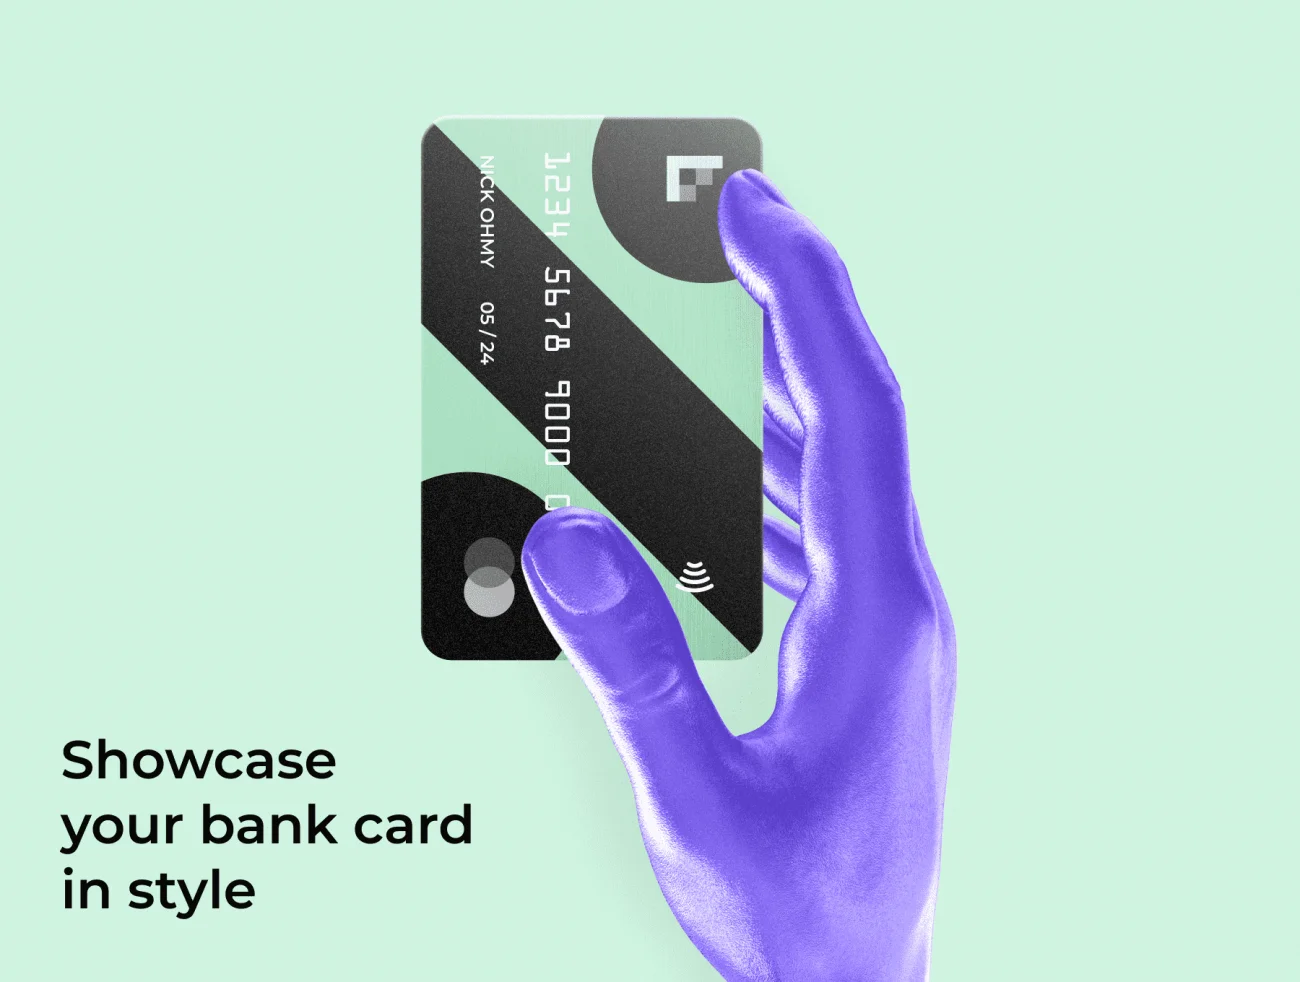 Glossy Bank Card Kit 半透明毛玻璃轻拟物风格银行卡figma样机套件-产品展示、优雅样机、创意展示、办公样机、名片杂志、实景样机、样机、简约样机-到位啦UI